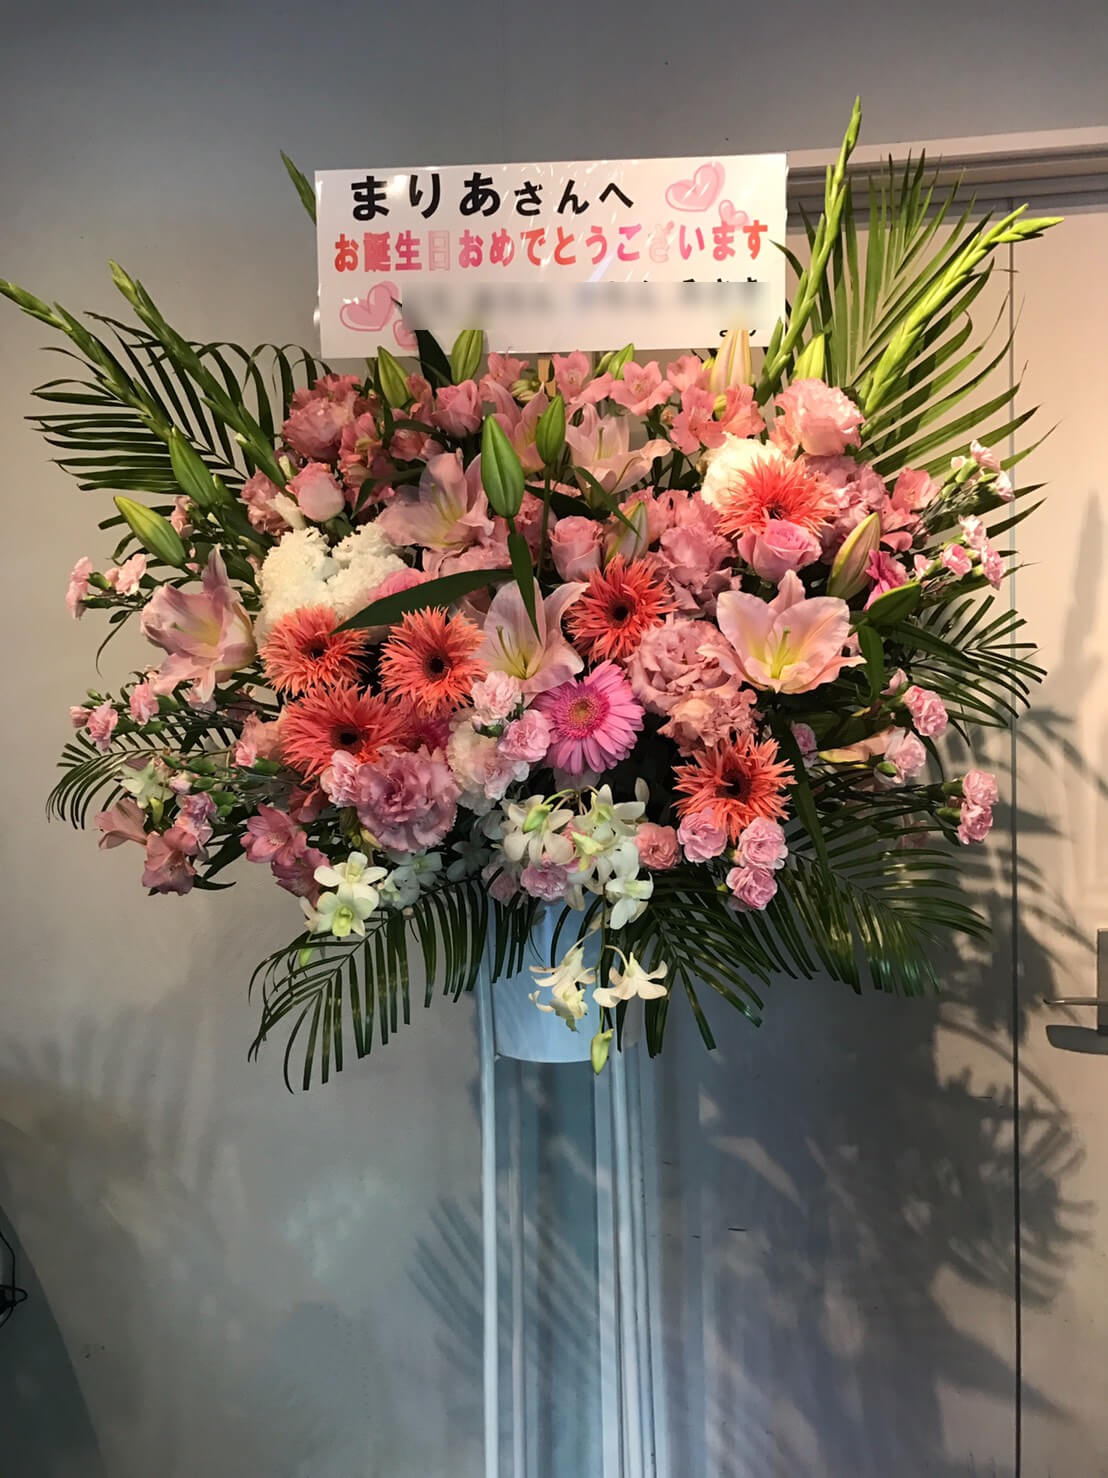 北千住cluba3 まりあ様の誕生日祝いピンク系スタンド花 はなしごと